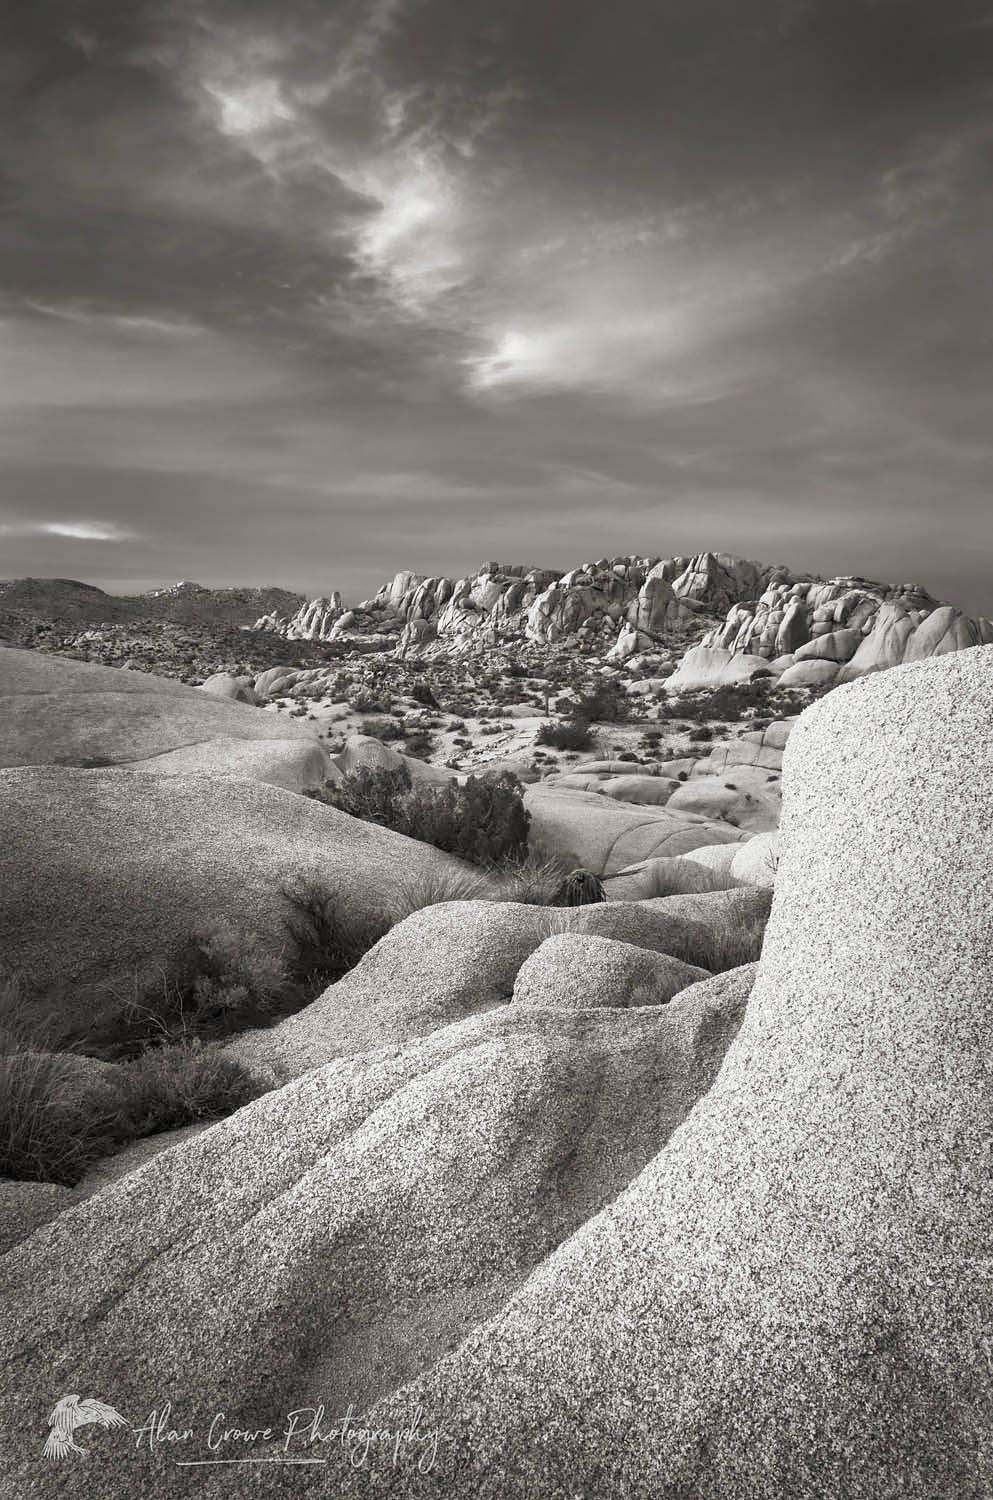 Jumbo Rocks area of Joshua Tree National Park California #55190bw